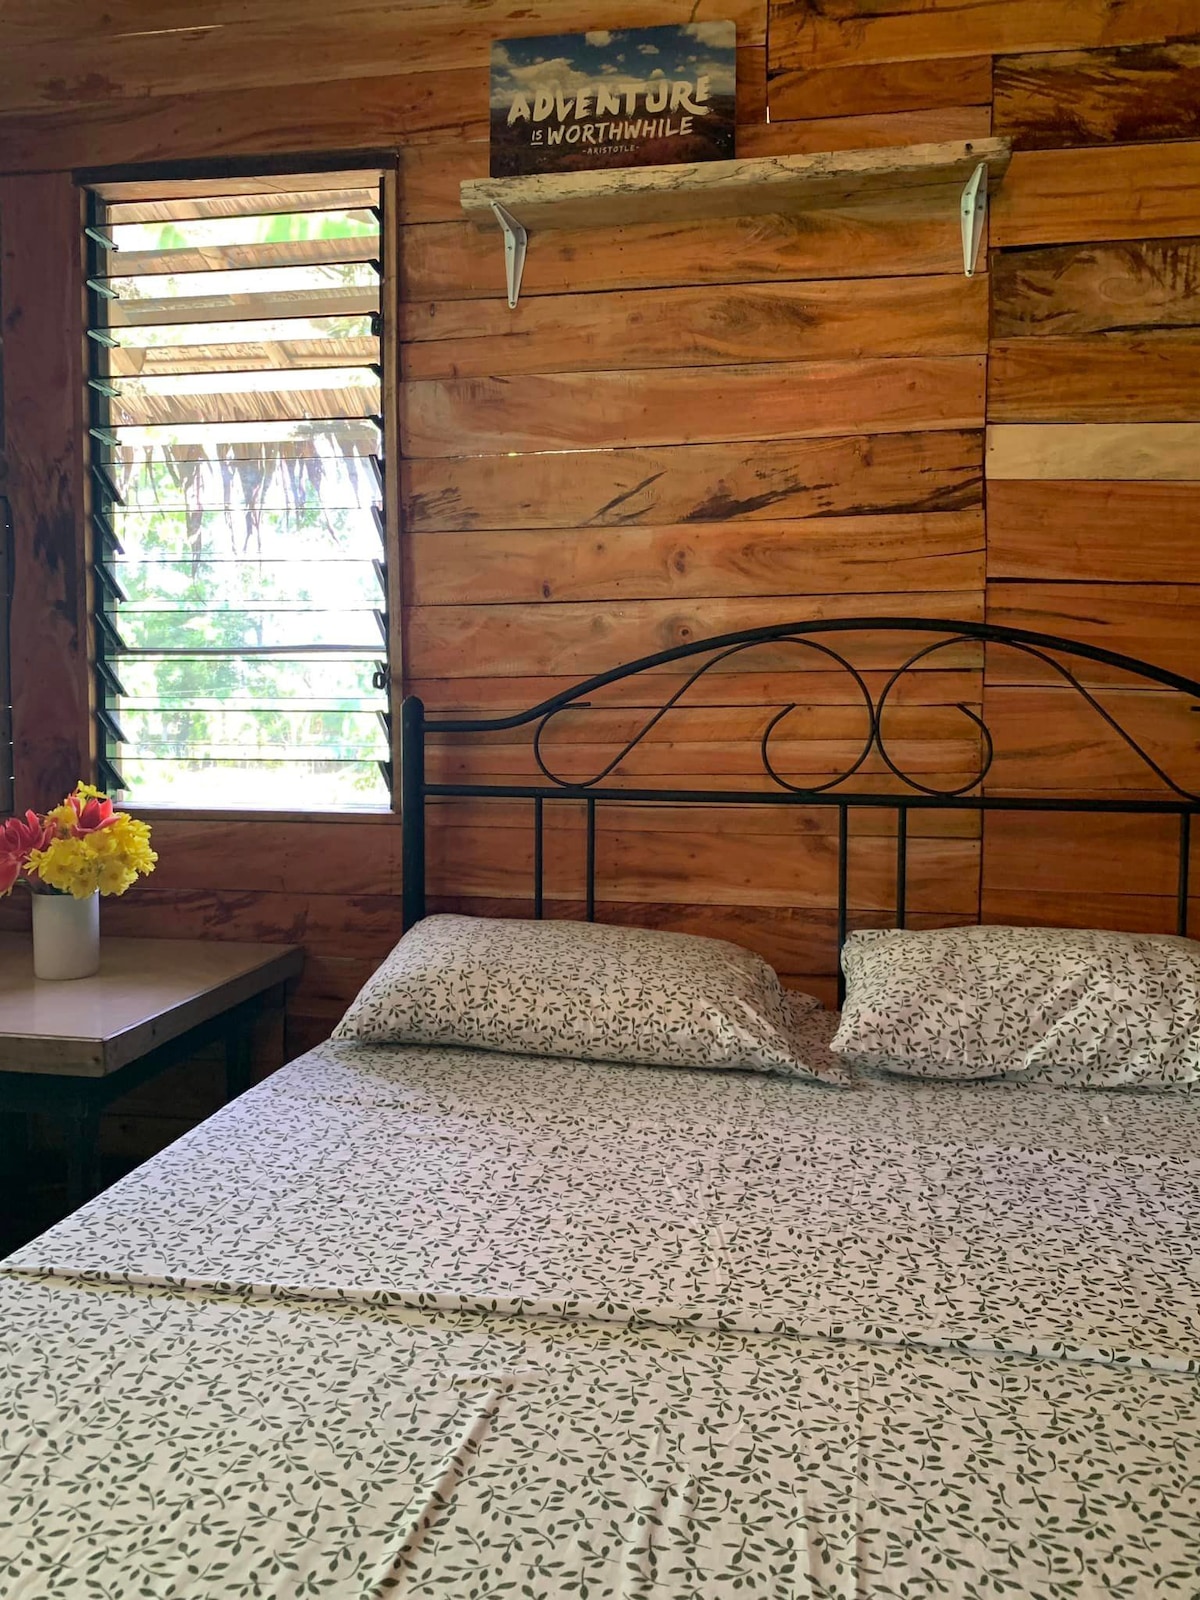 Cozy Hideaway in a Wooden Cabin